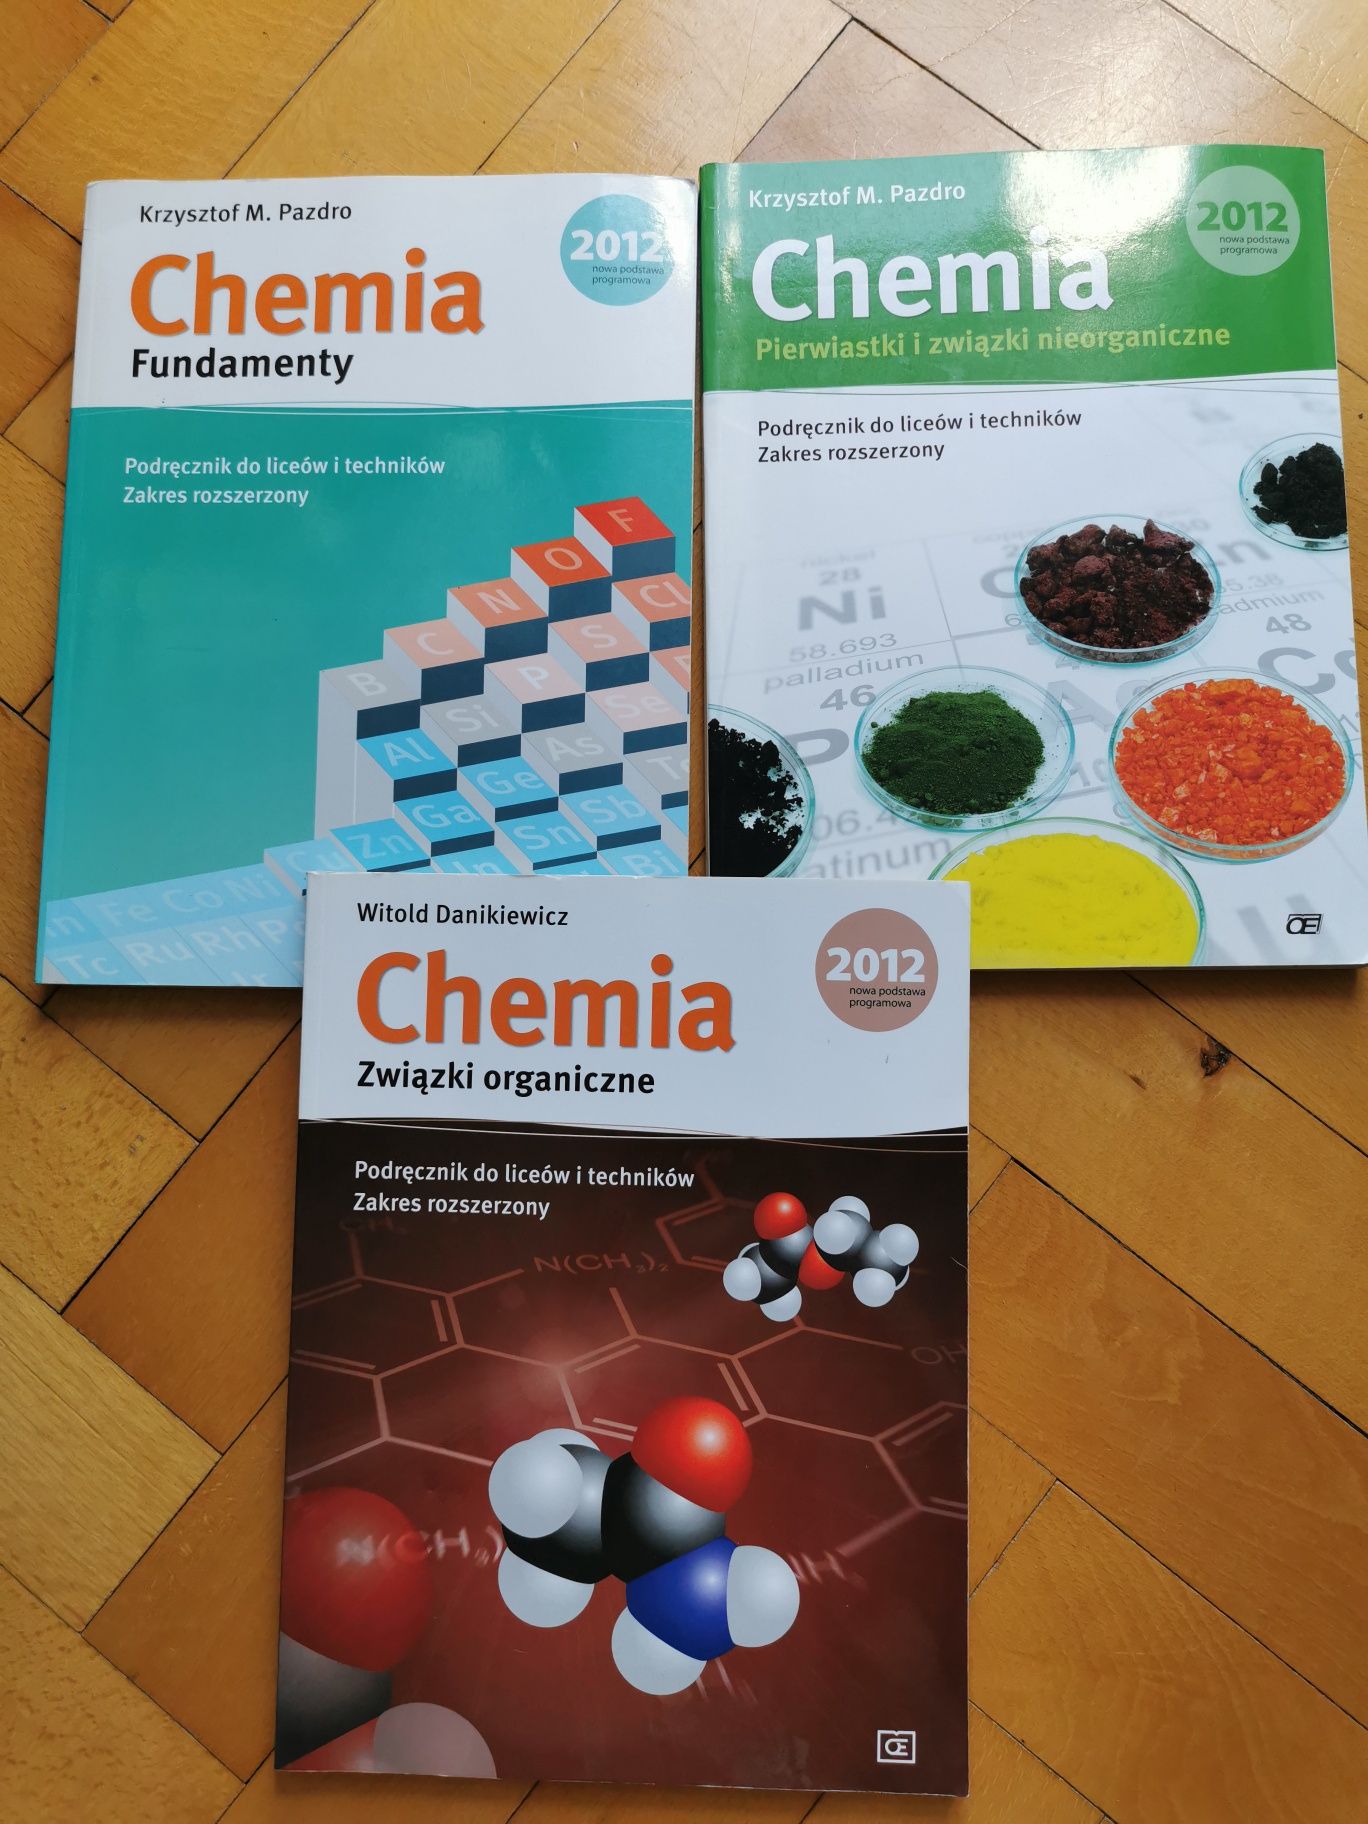 Chemia pazdro, danikiewicz podręcznik do chemii rozszerzonej